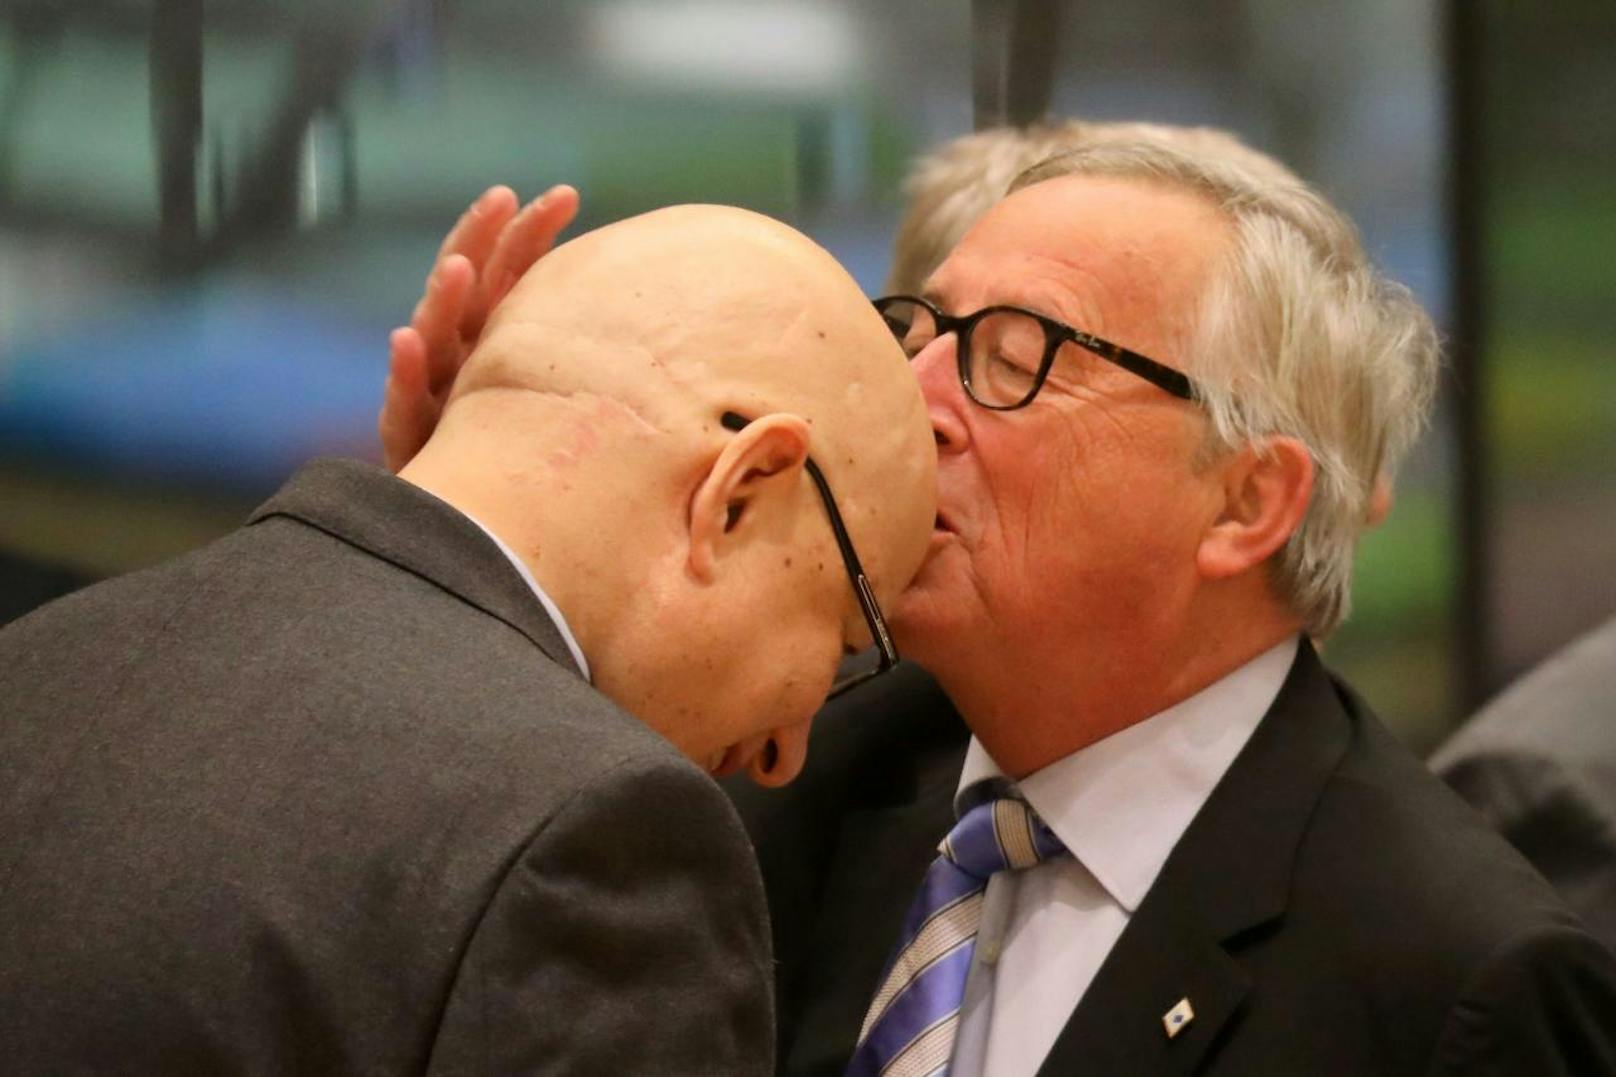 Beim EU-Gipfel am 14. Dezember wuschelte er einer Mitarbeiterin durch die Haare, so dass diese mit zerzauster Frisur stehen bleiben musste. Ein anderer Mitarbeiter erhielt stattdessen ein Bussi auf die Glatze.